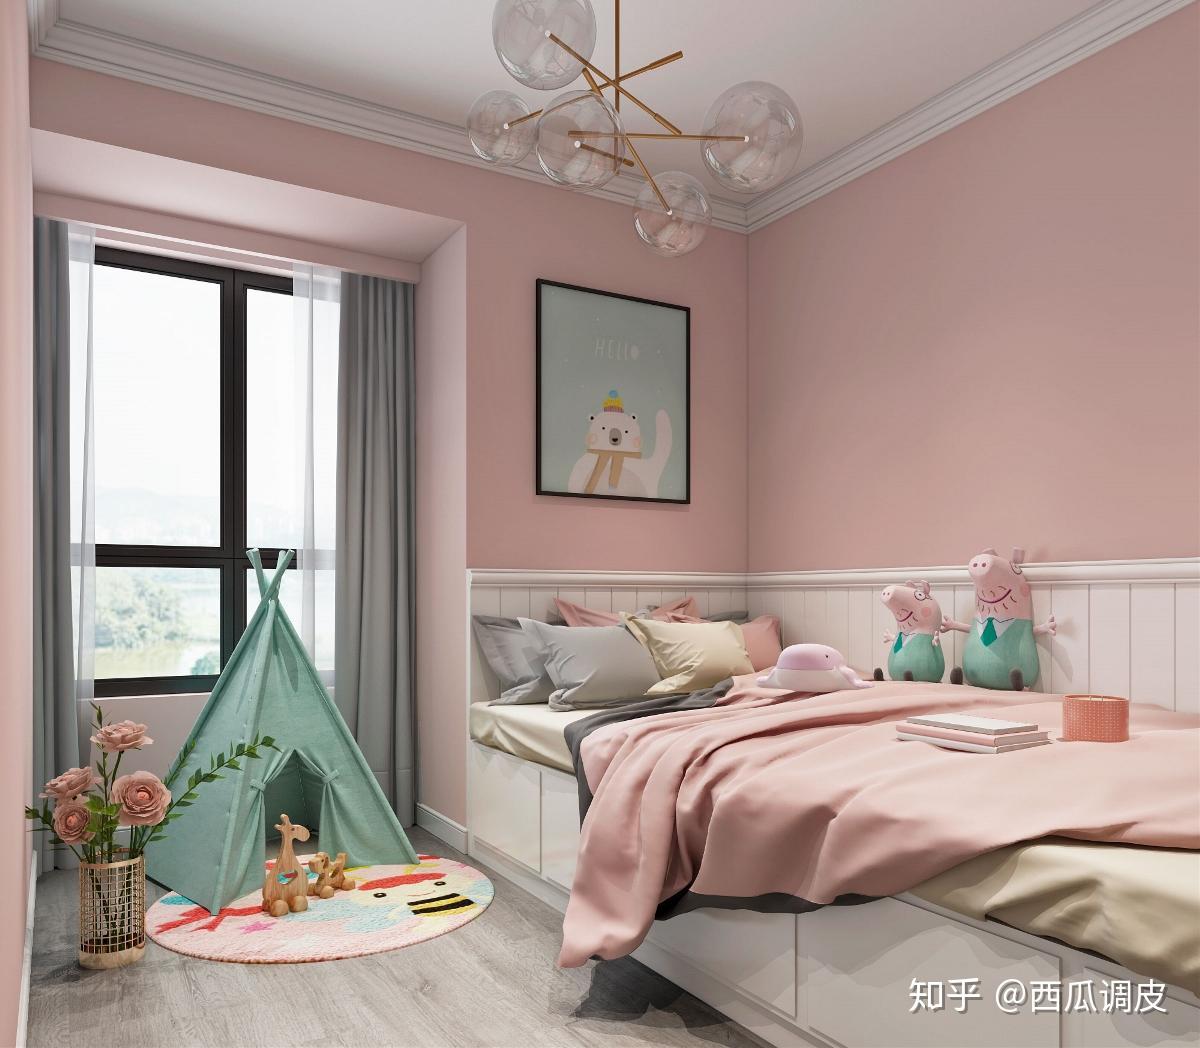 欧式奢华女生卧室效果图 – 设计本装修效果图